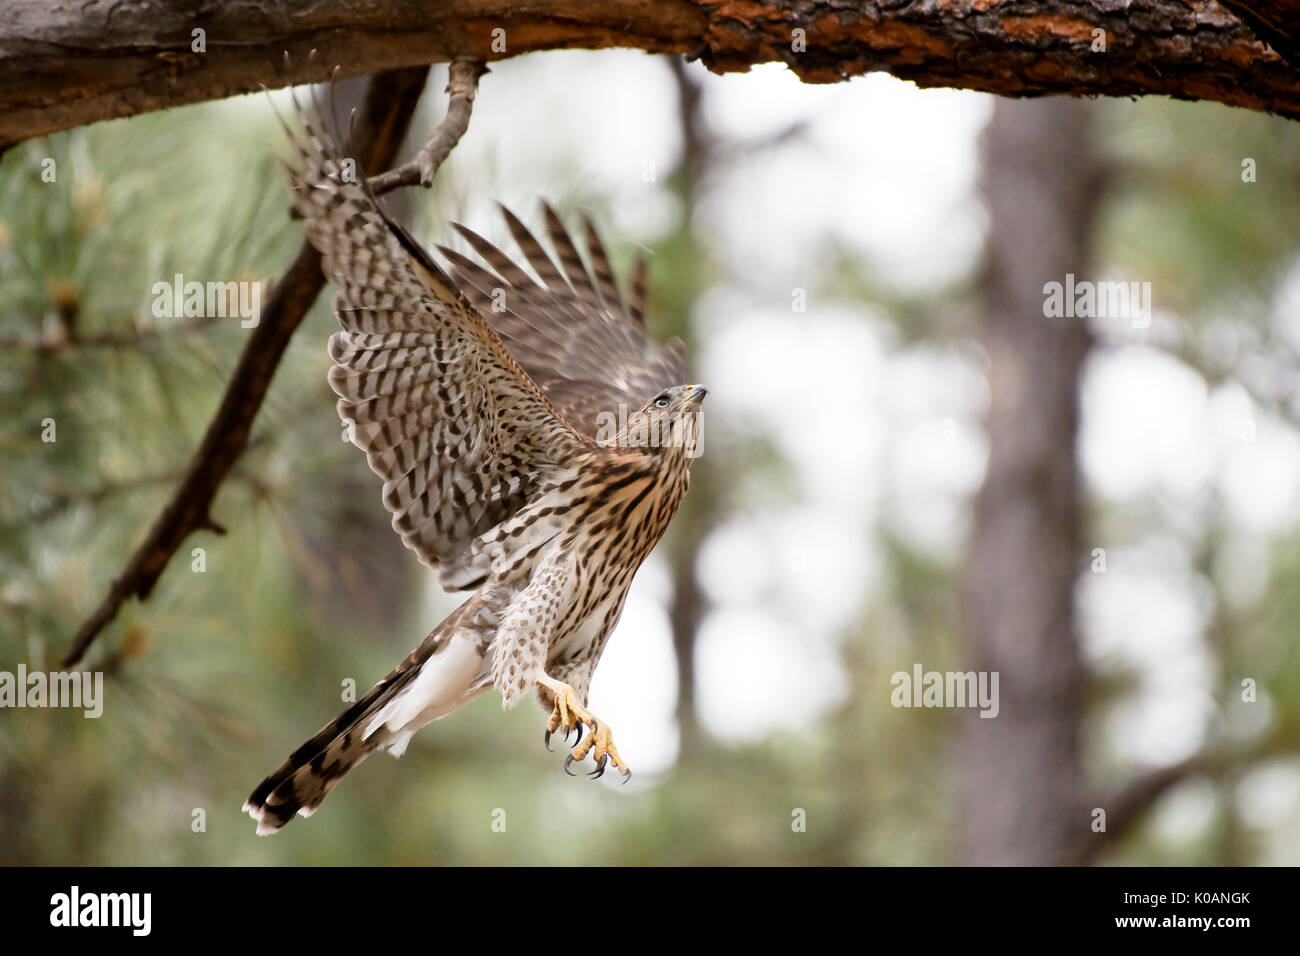 Cooper's hawk di prendere il volo. Flagstaff in Arizona, Stati Uniti d'America. Foto Stock